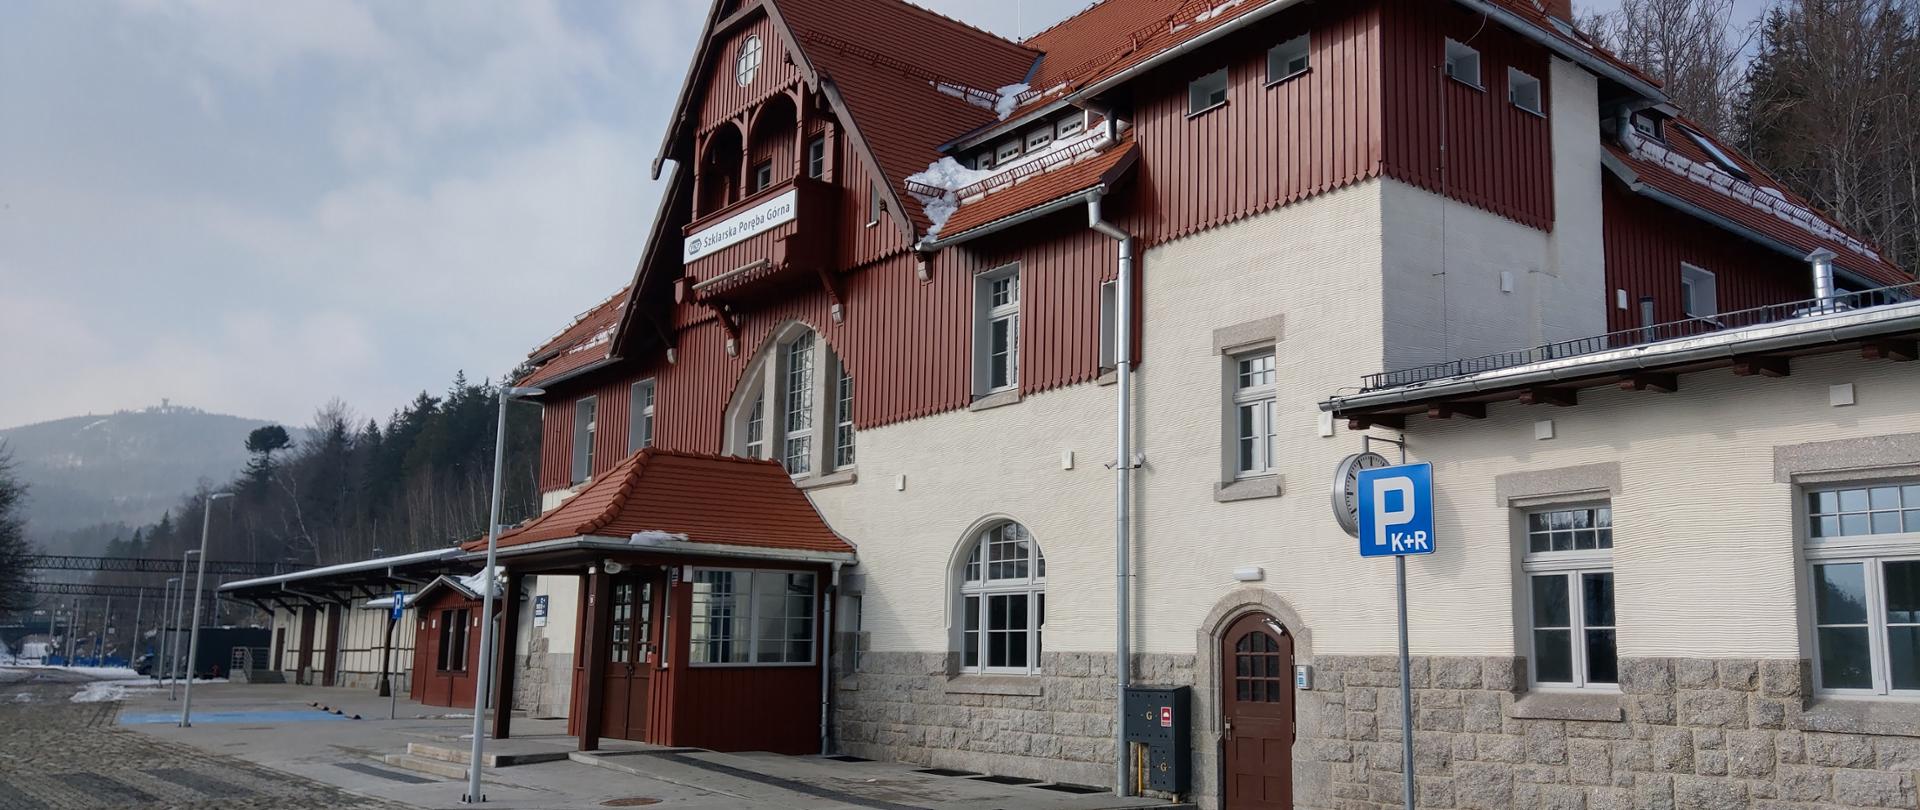 Na zdjęciu widać zmodernizowany budynek zabytkowego dworca kolejowego w Szklarskiej Porębie. Elewacja jest jasna, dach budynku w ciemnym kolorze. 